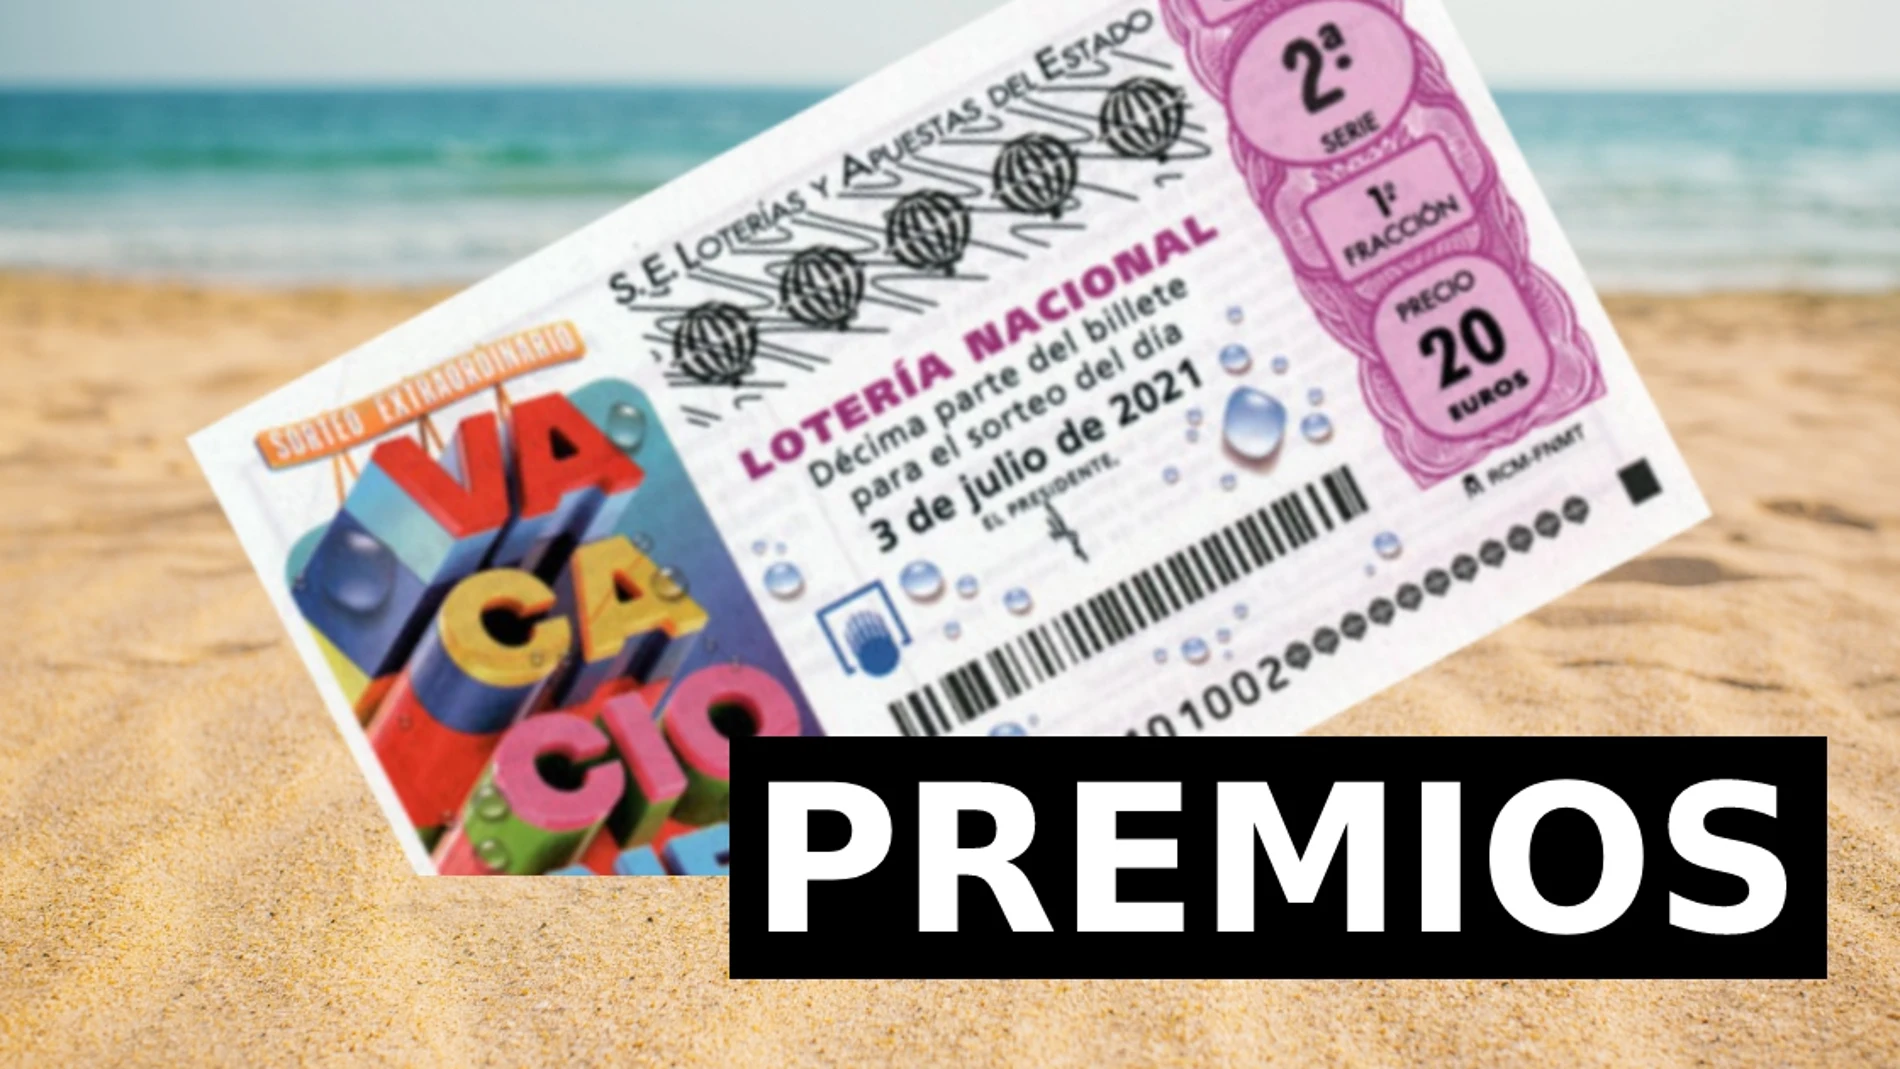 Sorteo Extraordinario de Vacaciones de Lotería Nacional: premios y probabilidad de ganar